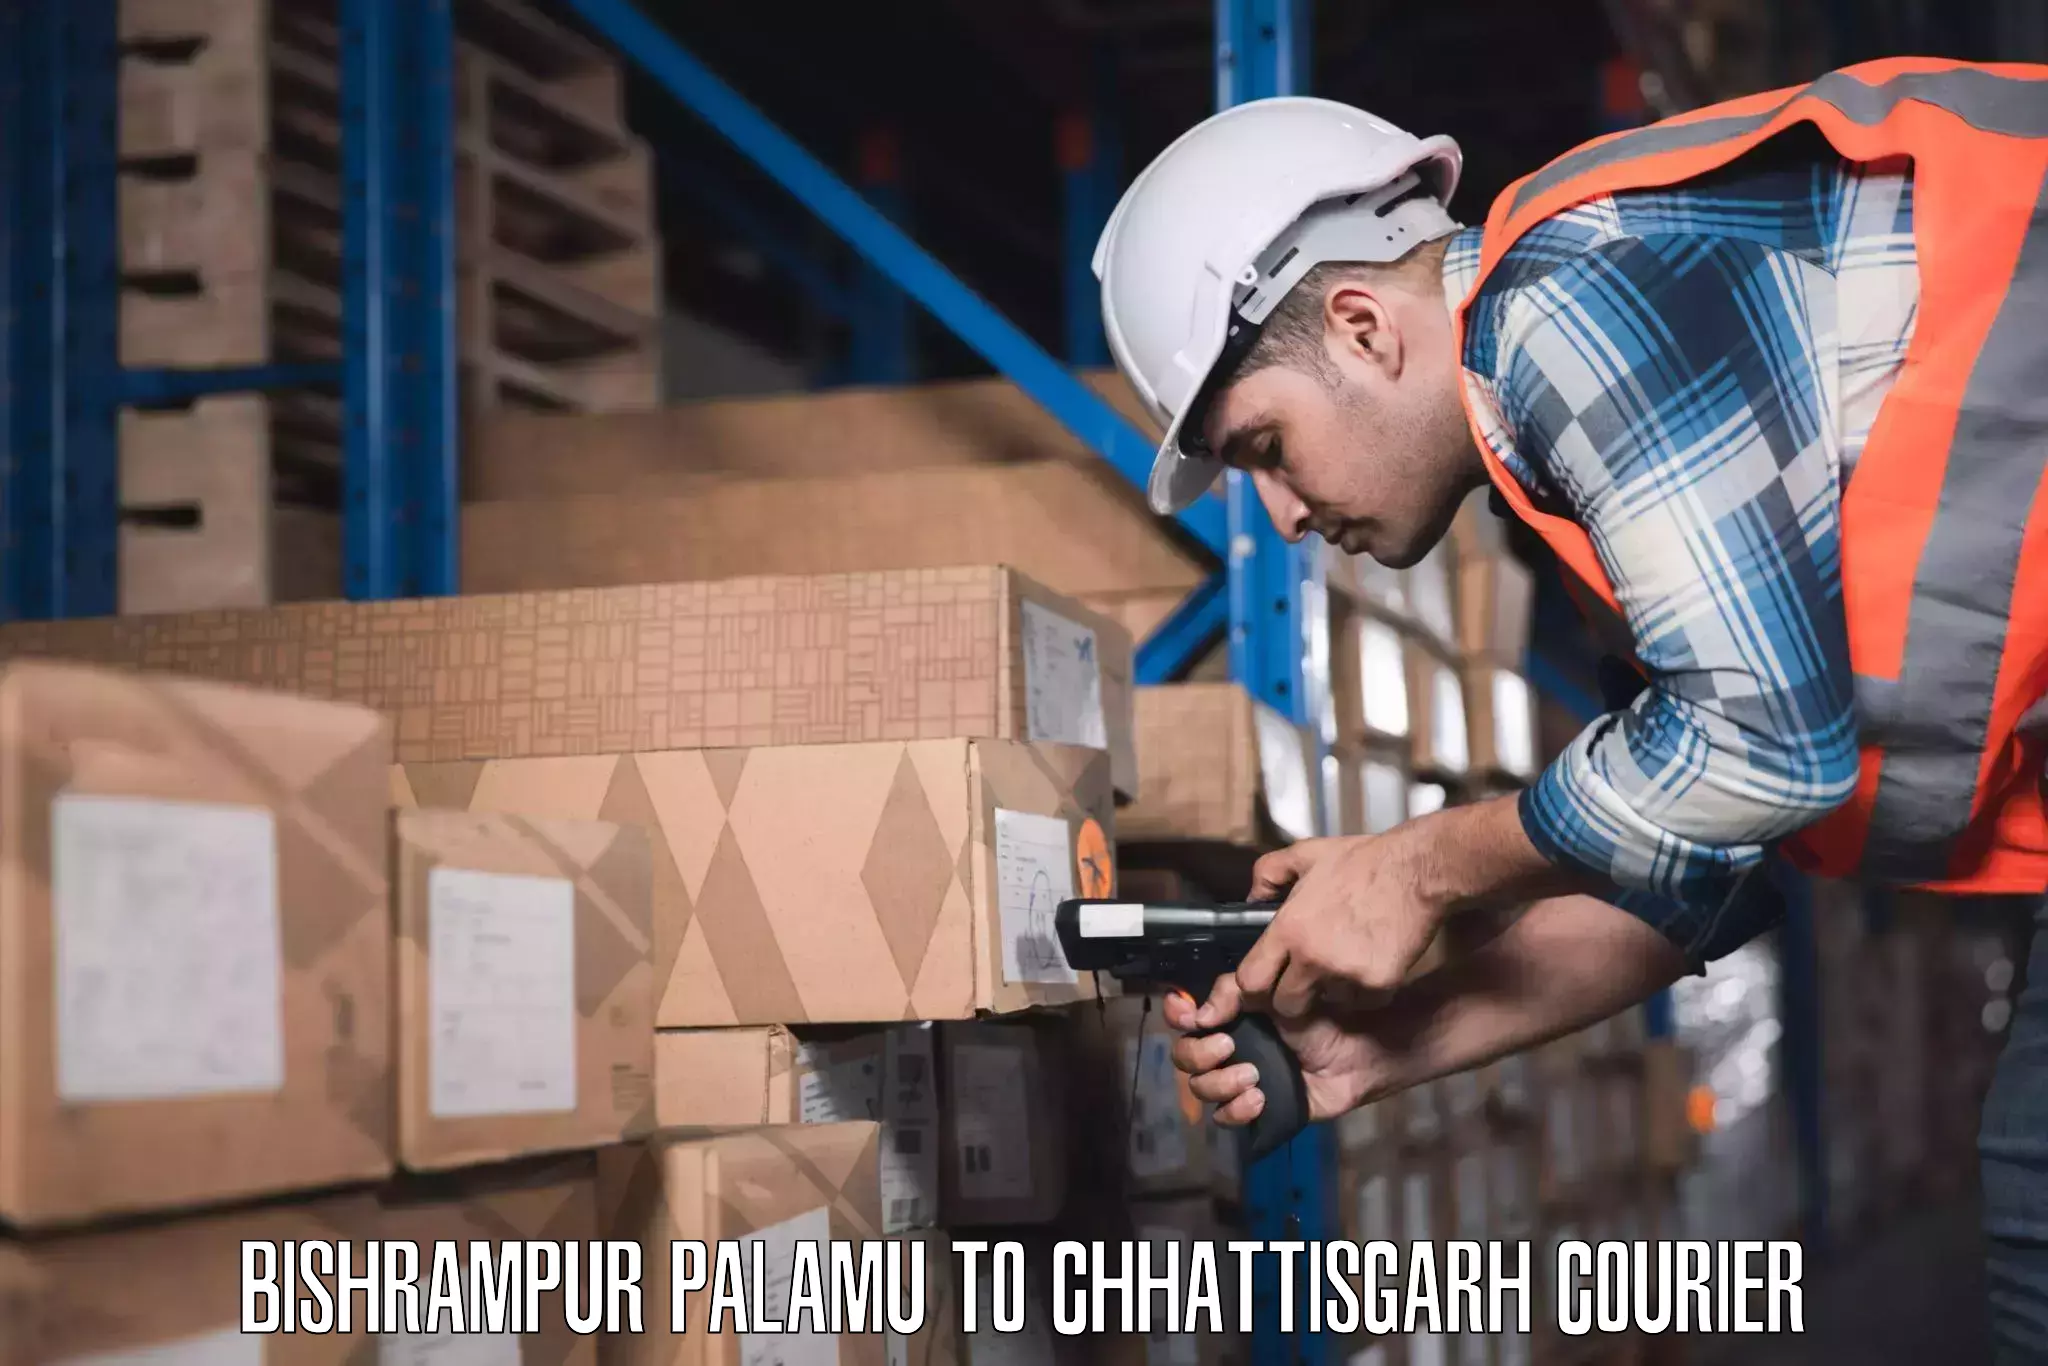 Luggage transfer service Bishrampur Palamu to Pakhanjur